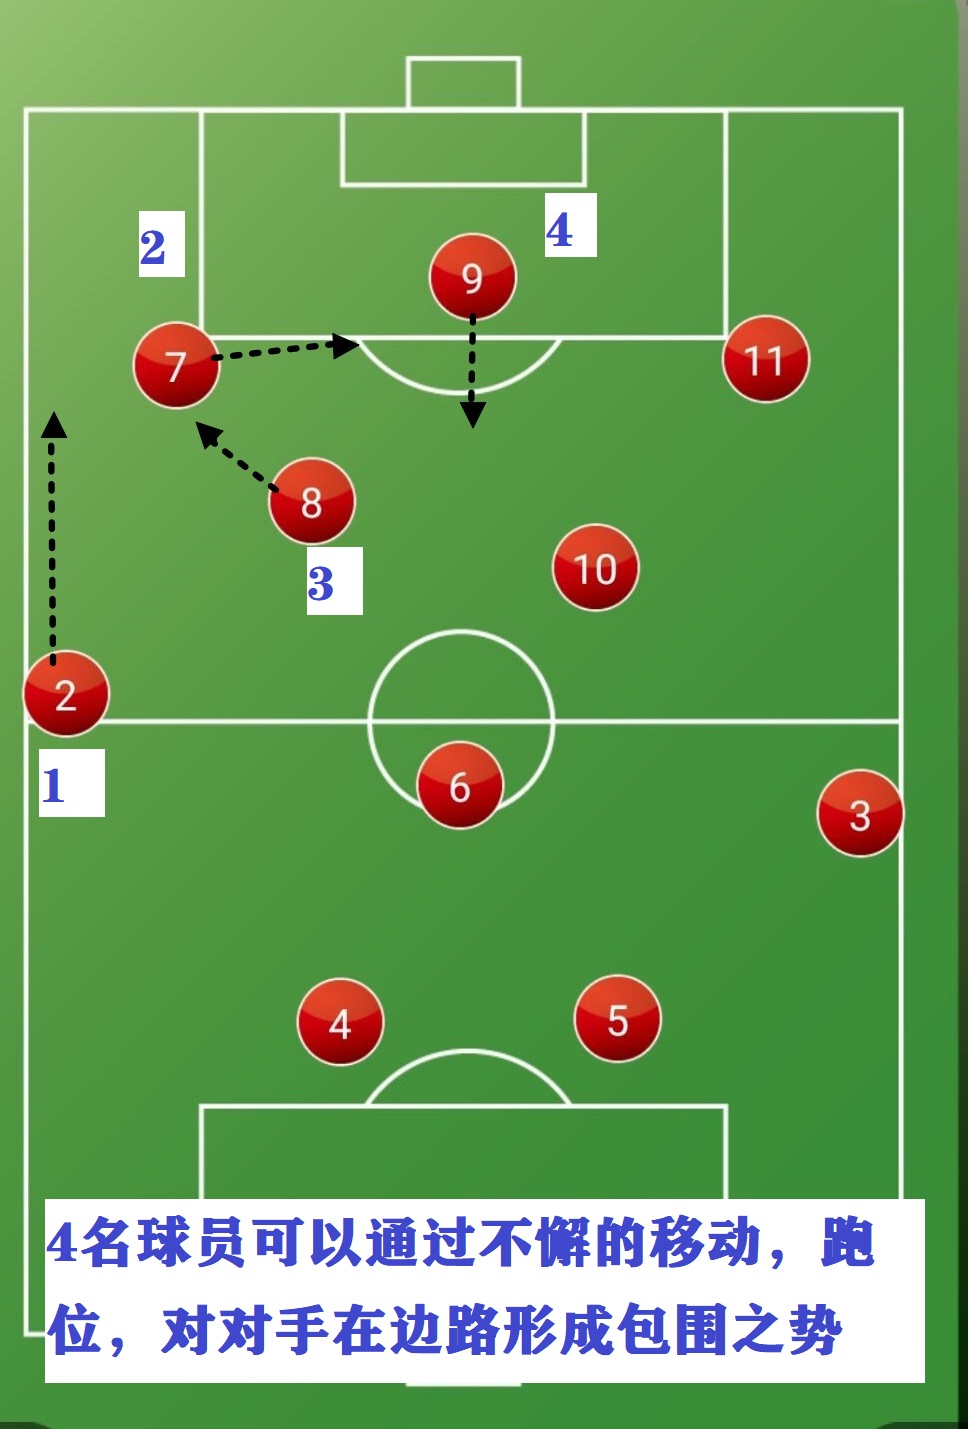 足球阵型图解简单(详解:现今世界足坛最流行的阵型,瓜迪奥拉将此阵型